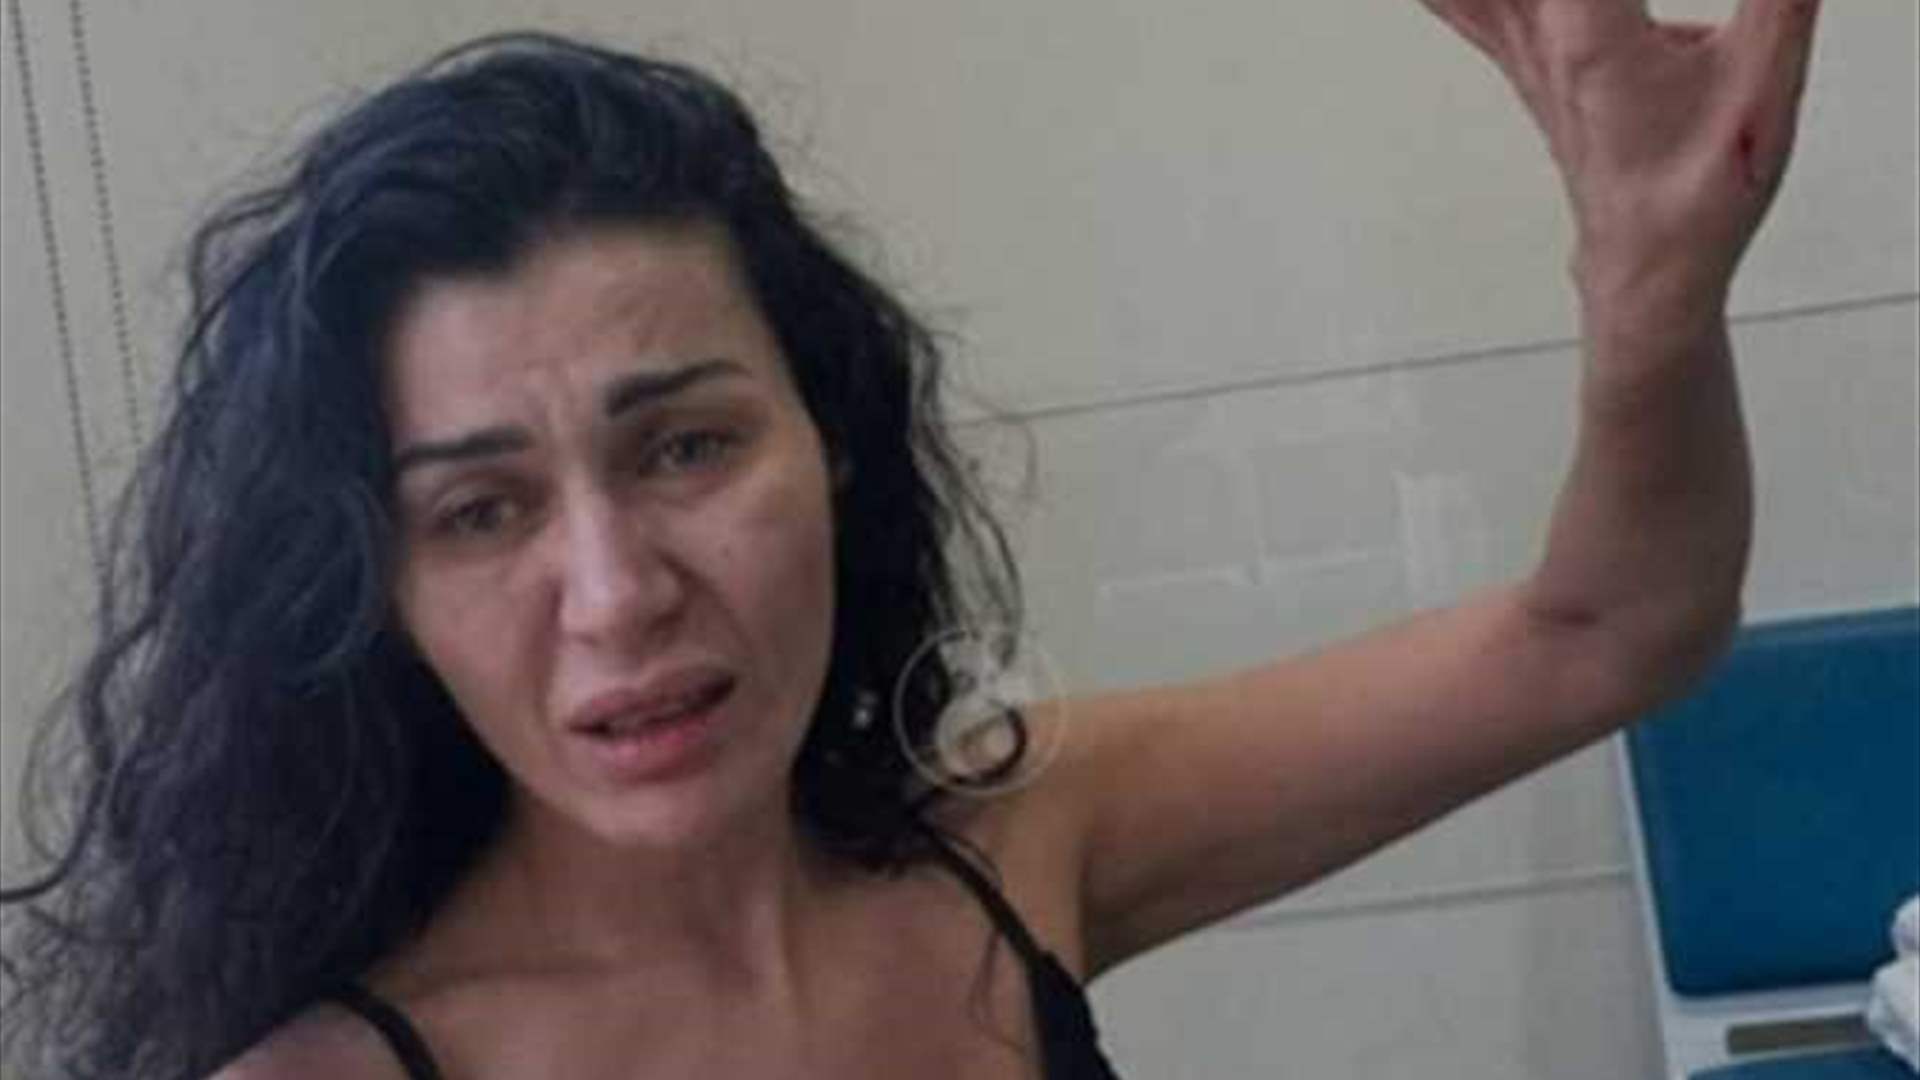 بعد الضرب والصراخ في غرفتها... ما هي حالة والدة نادين الراسي؟ (صورة)